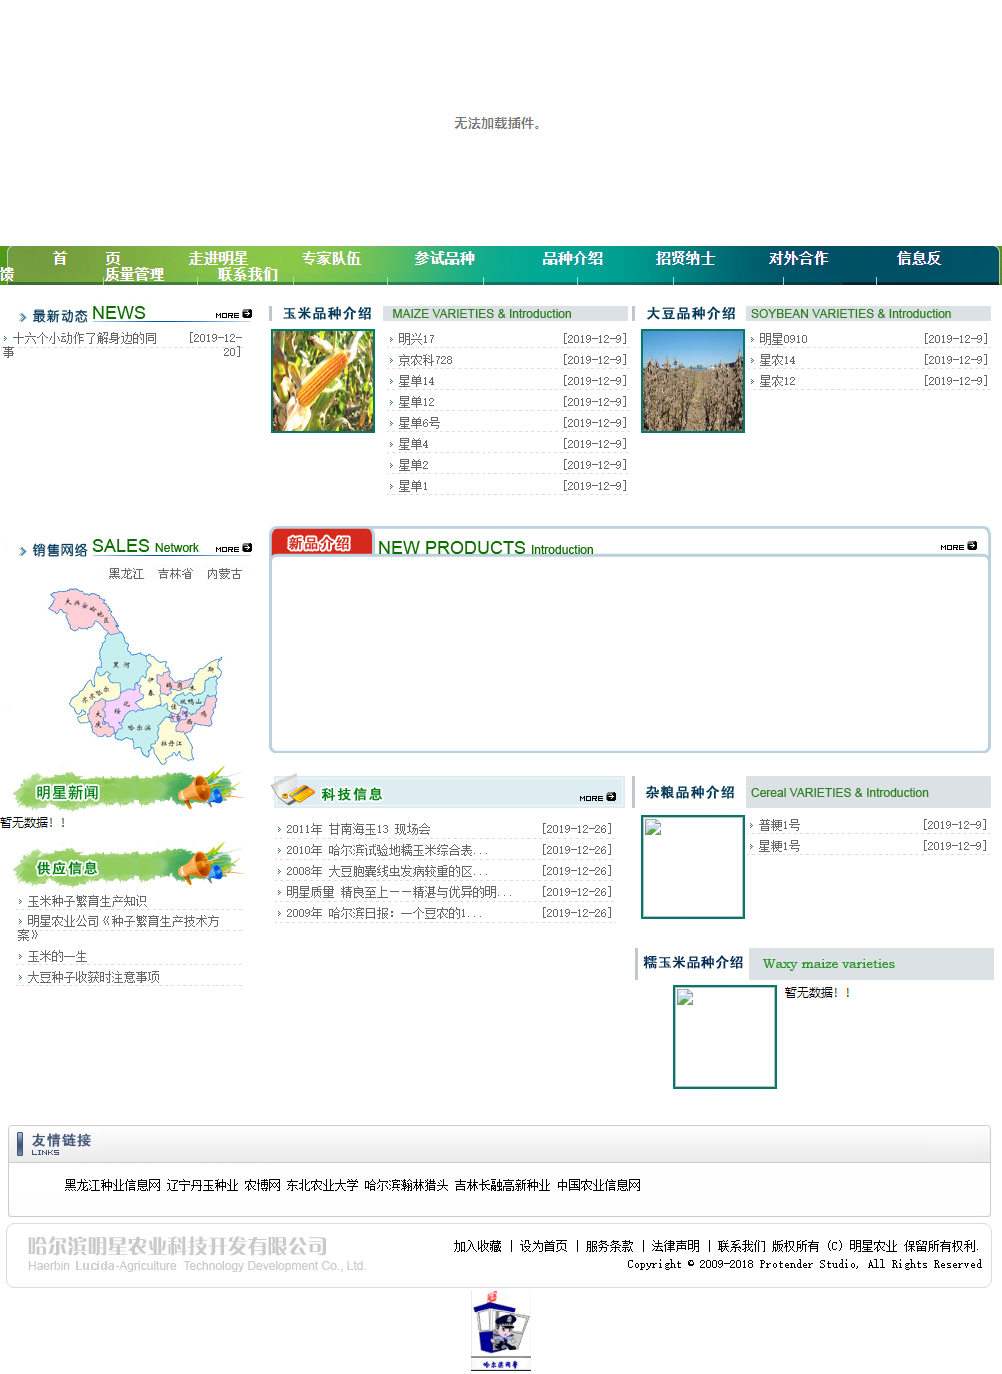 哈尔滨明星农业科技开发有限公司网站案例